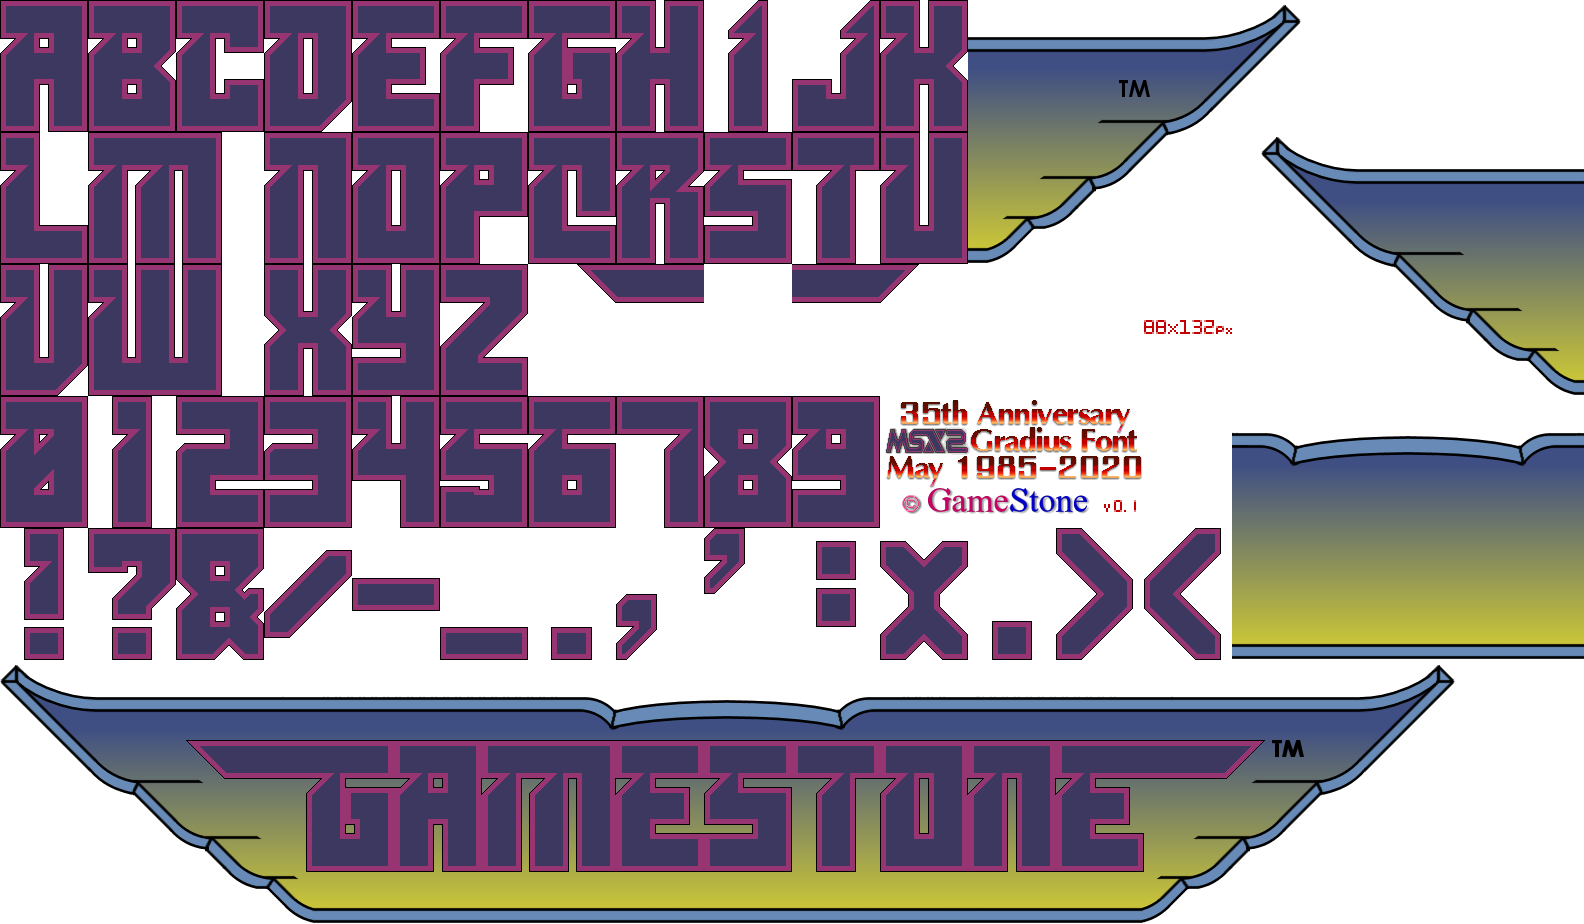 GameStone's 35th Anniversary MSX2 Gradius Font